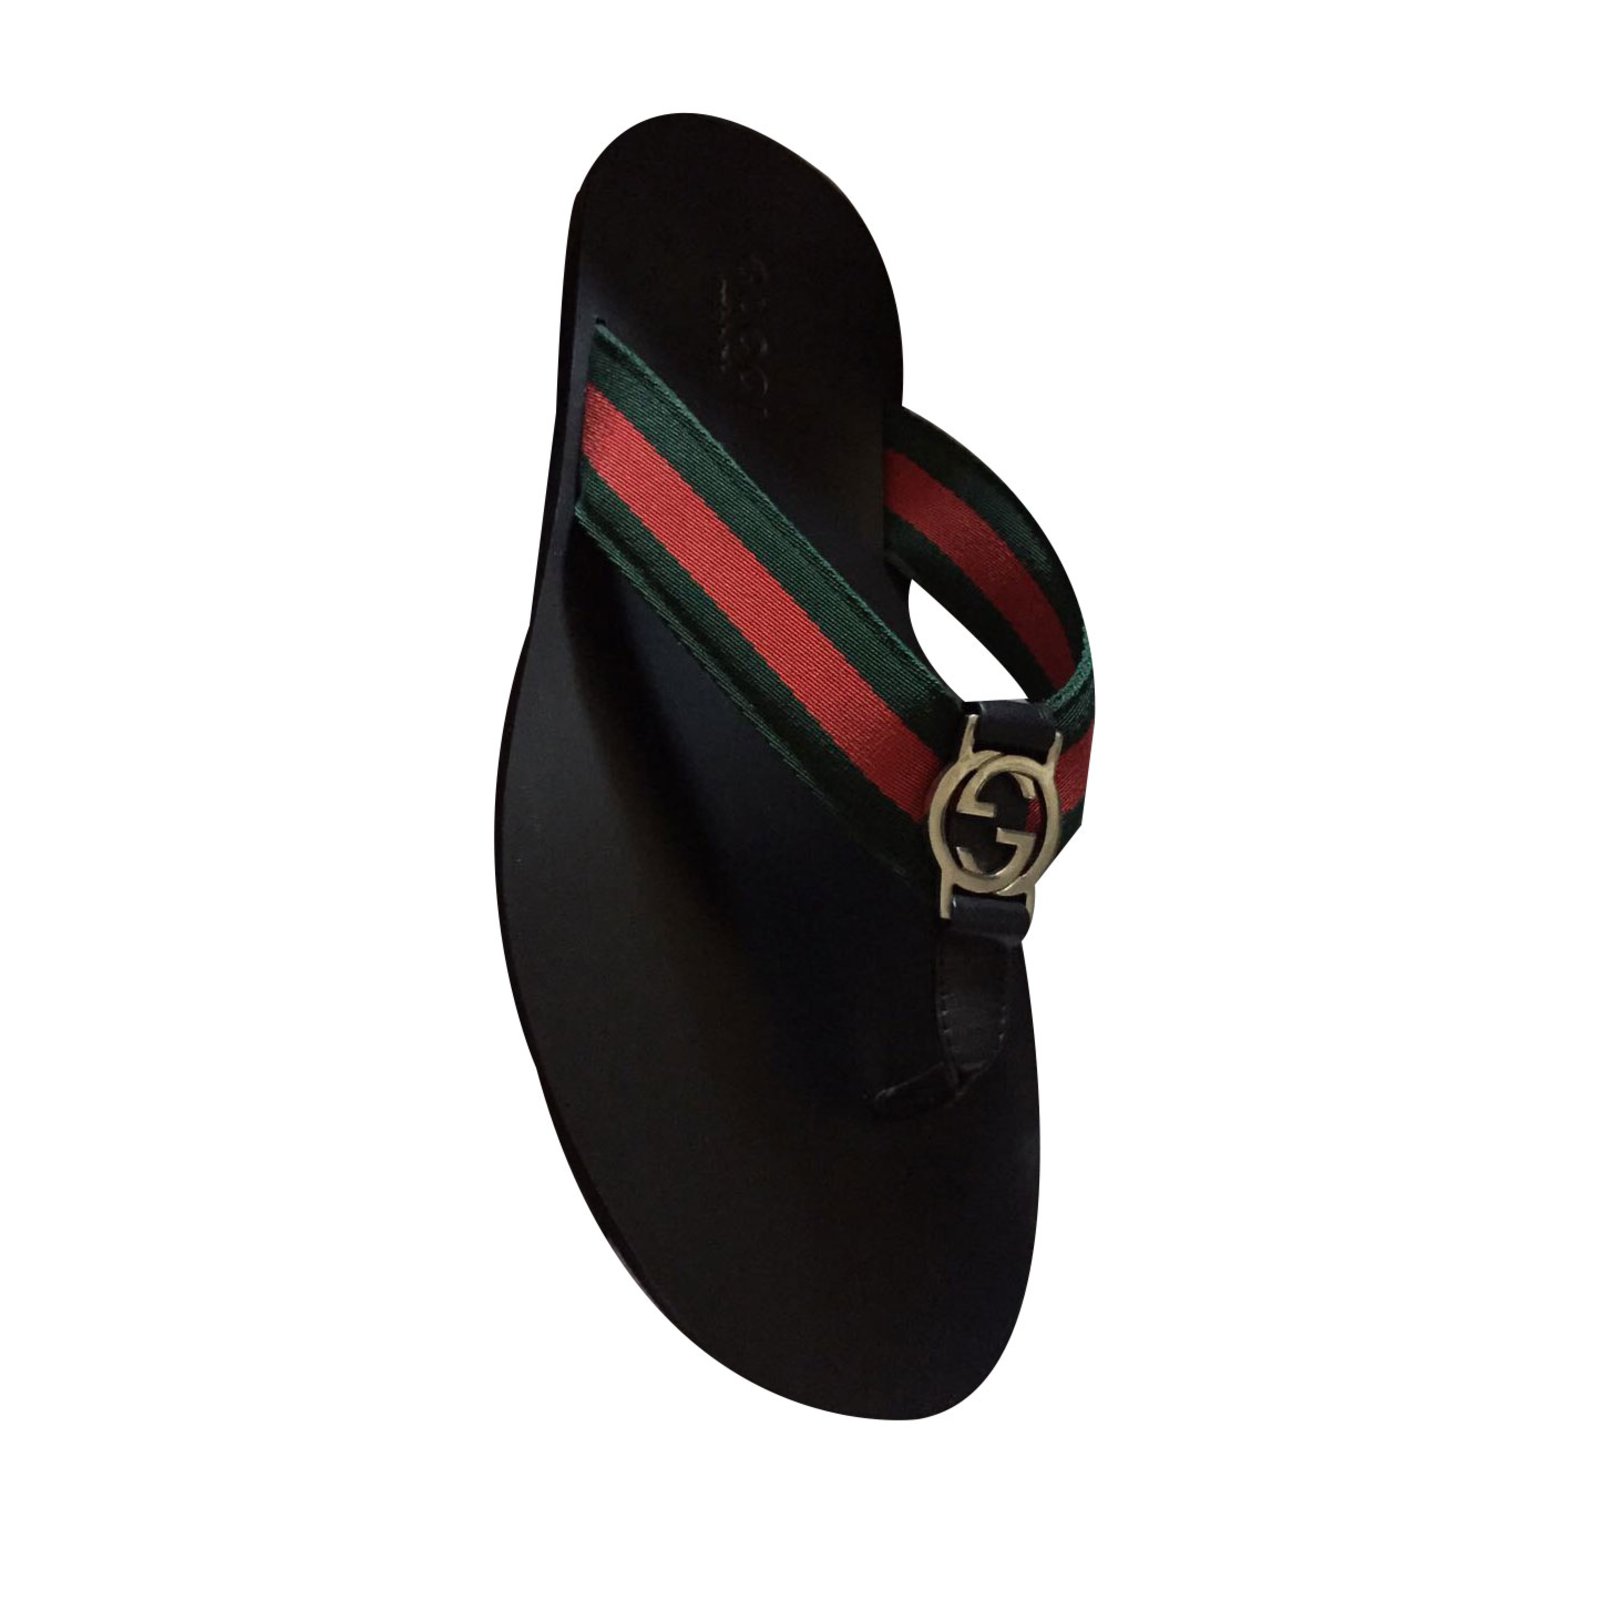  Gucci  Men  Sandals  Men  Sandals  Leather Black ref 49794 